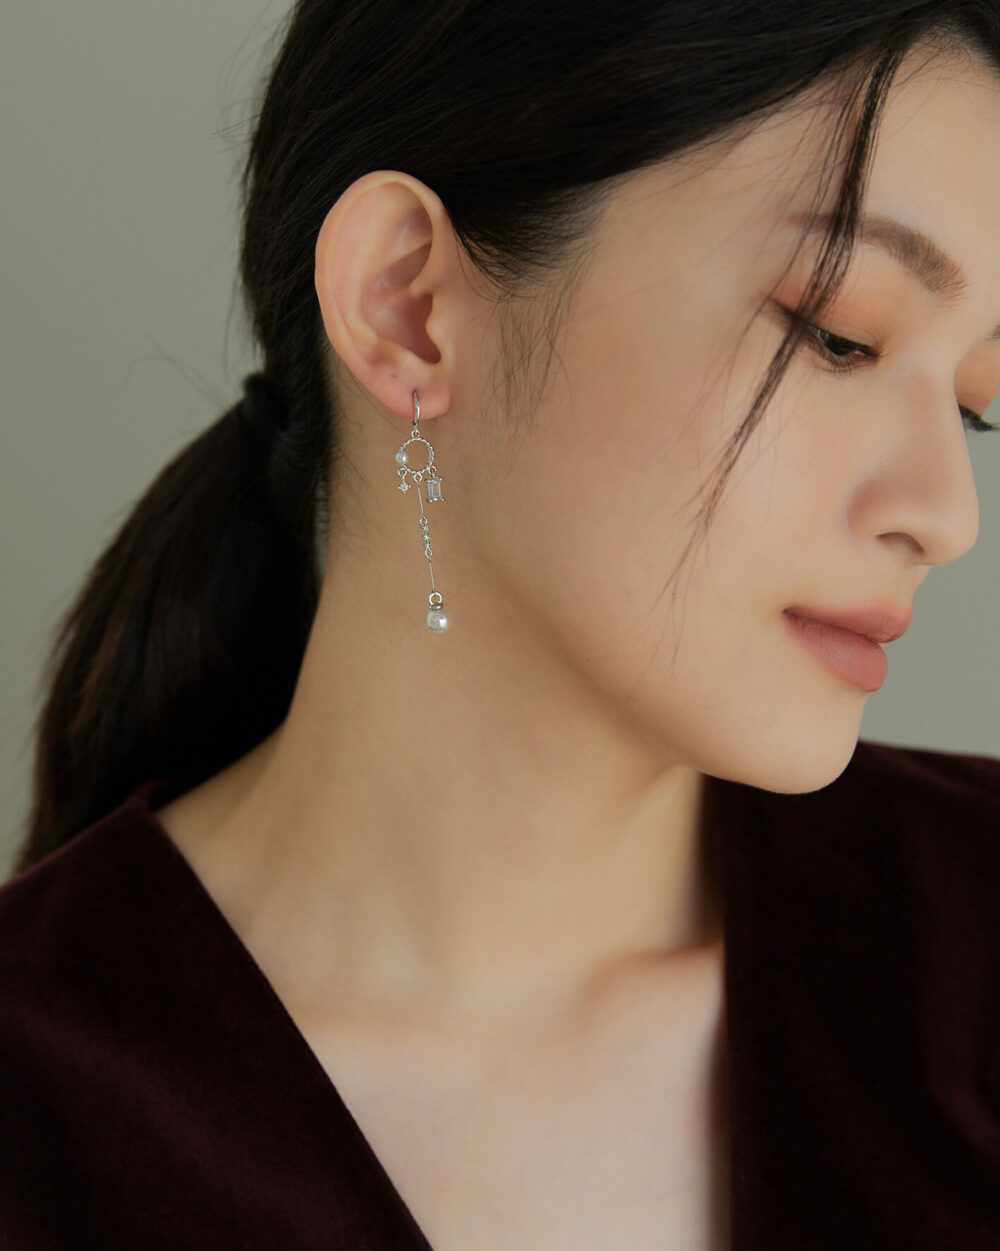 Eco安珂,韓國飾品,韓國耳環,耳針式耳環,垂墜耳環,氣質耳環,婚宴耳環